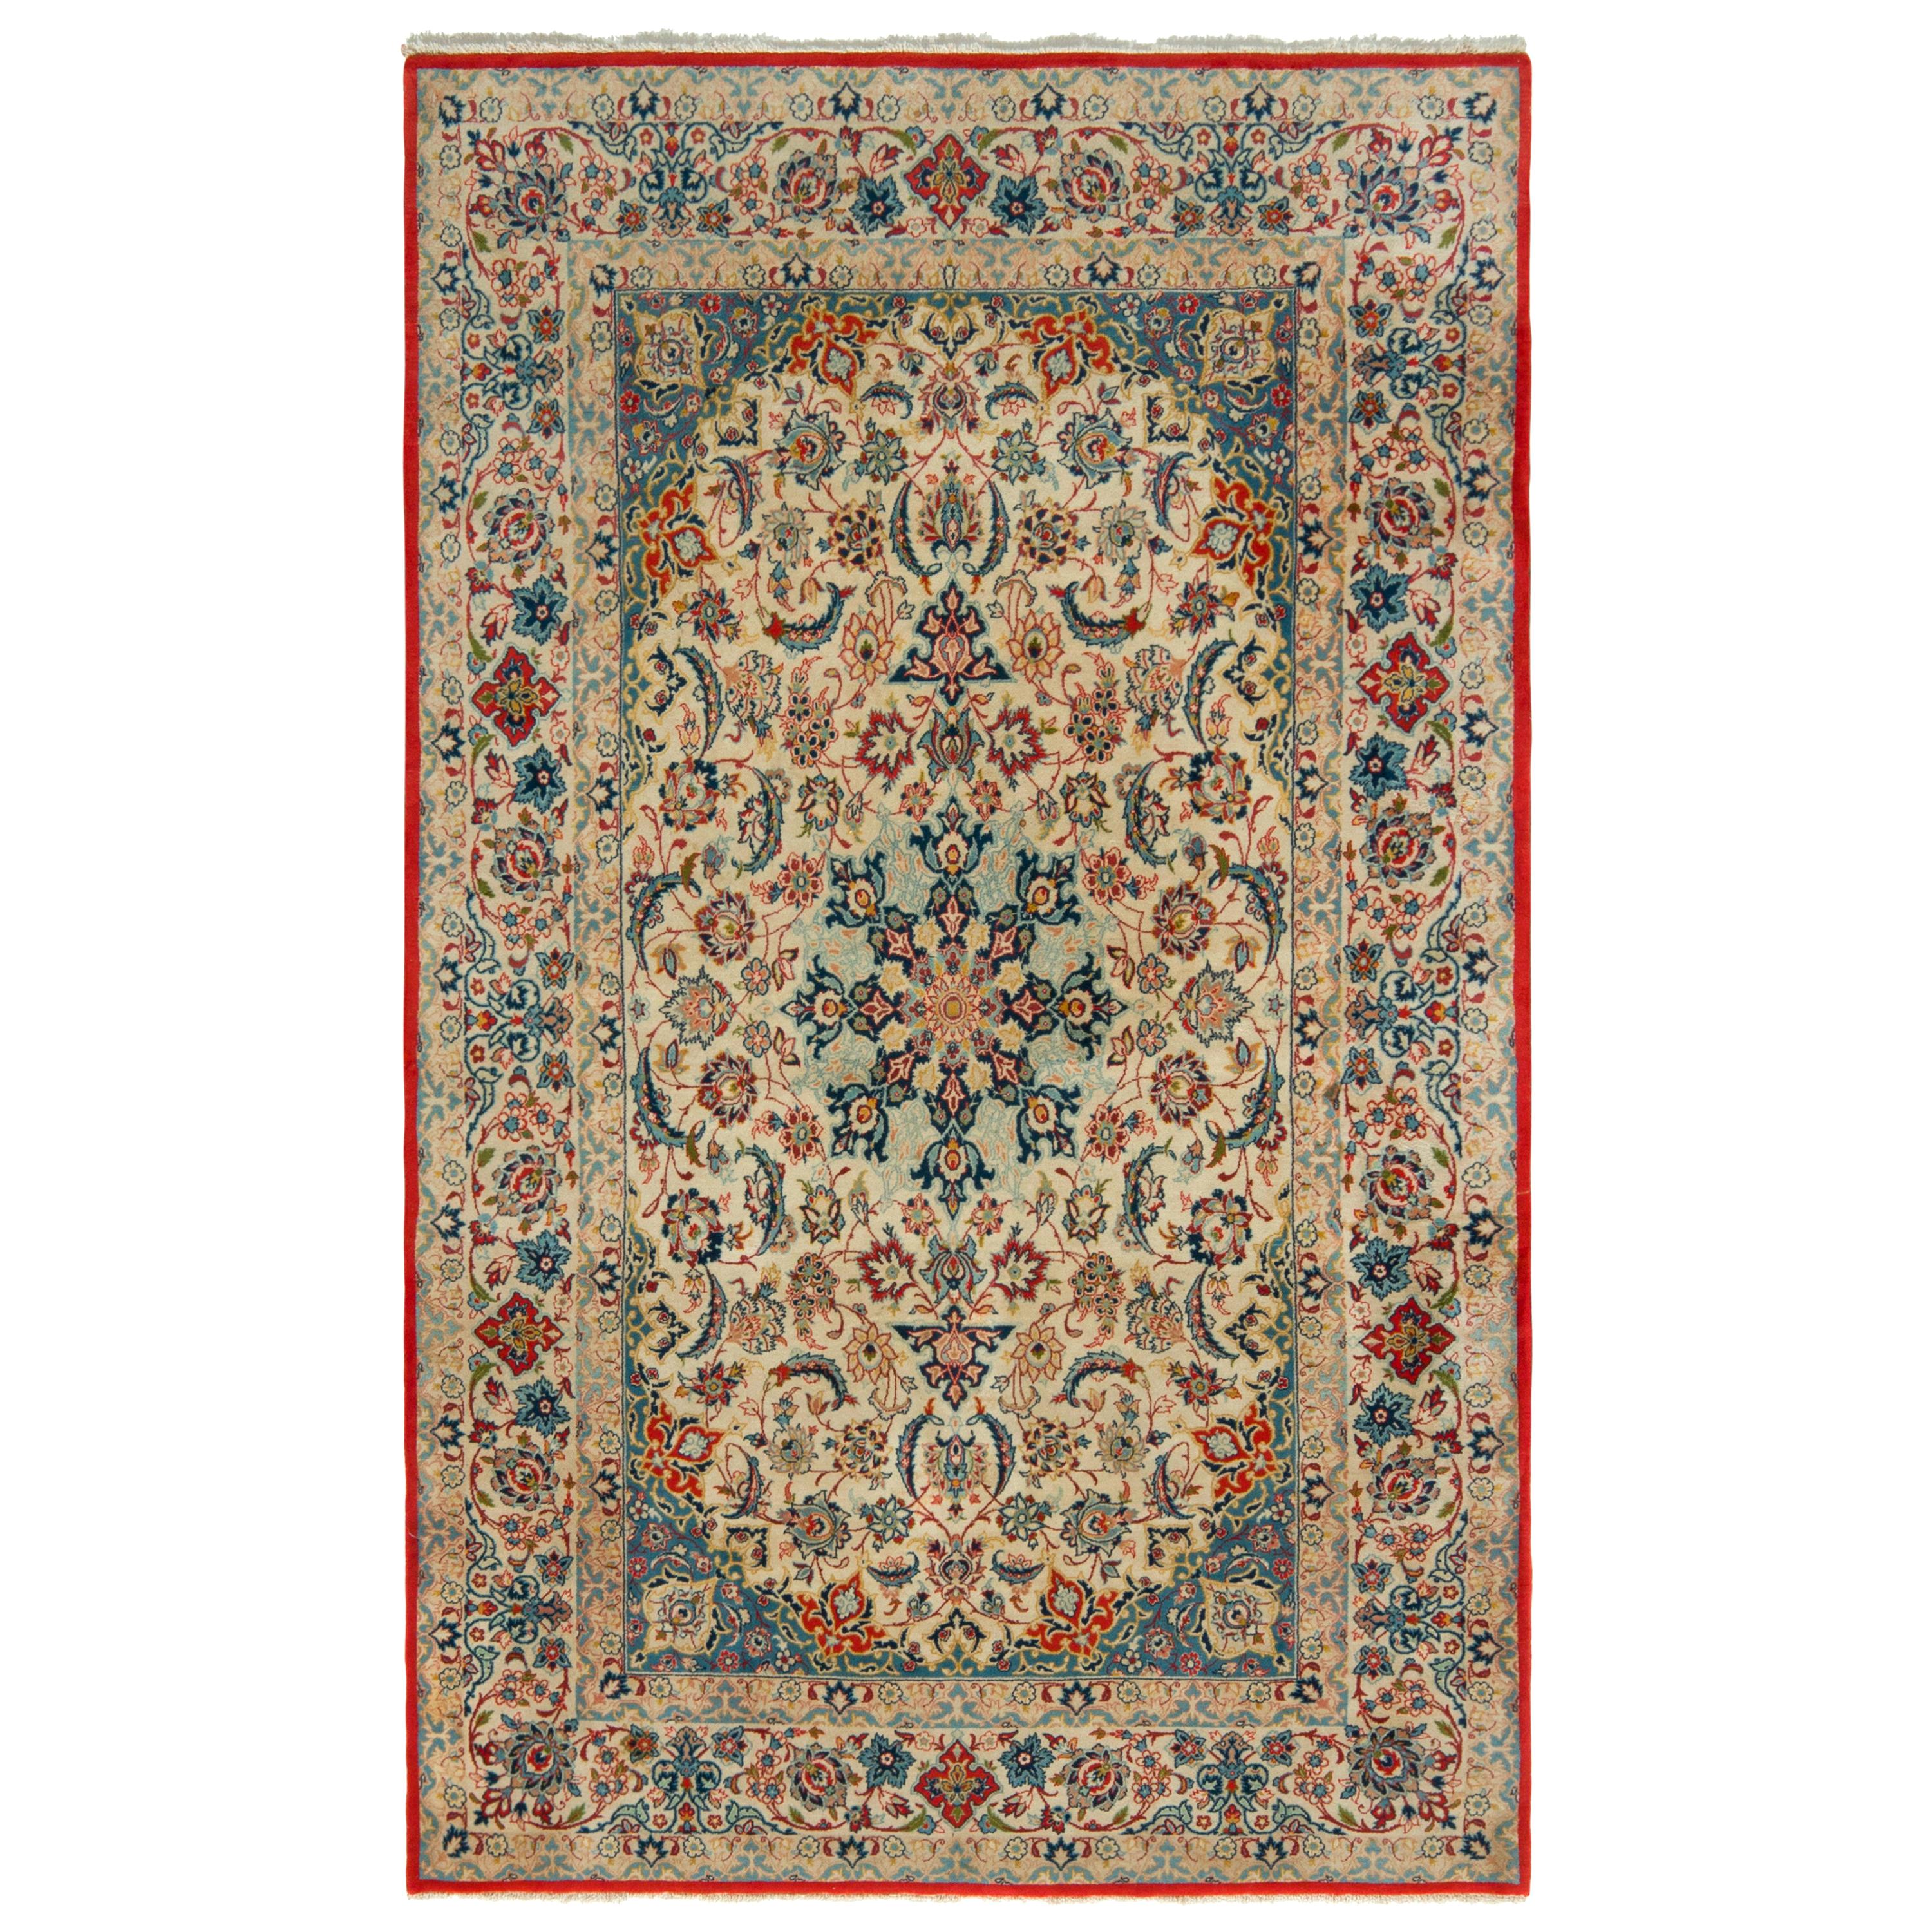 Vintage Isfahan Teppich in Beige, Blau und Rot mit persischem Blumenmuster von Teppich & Kelim